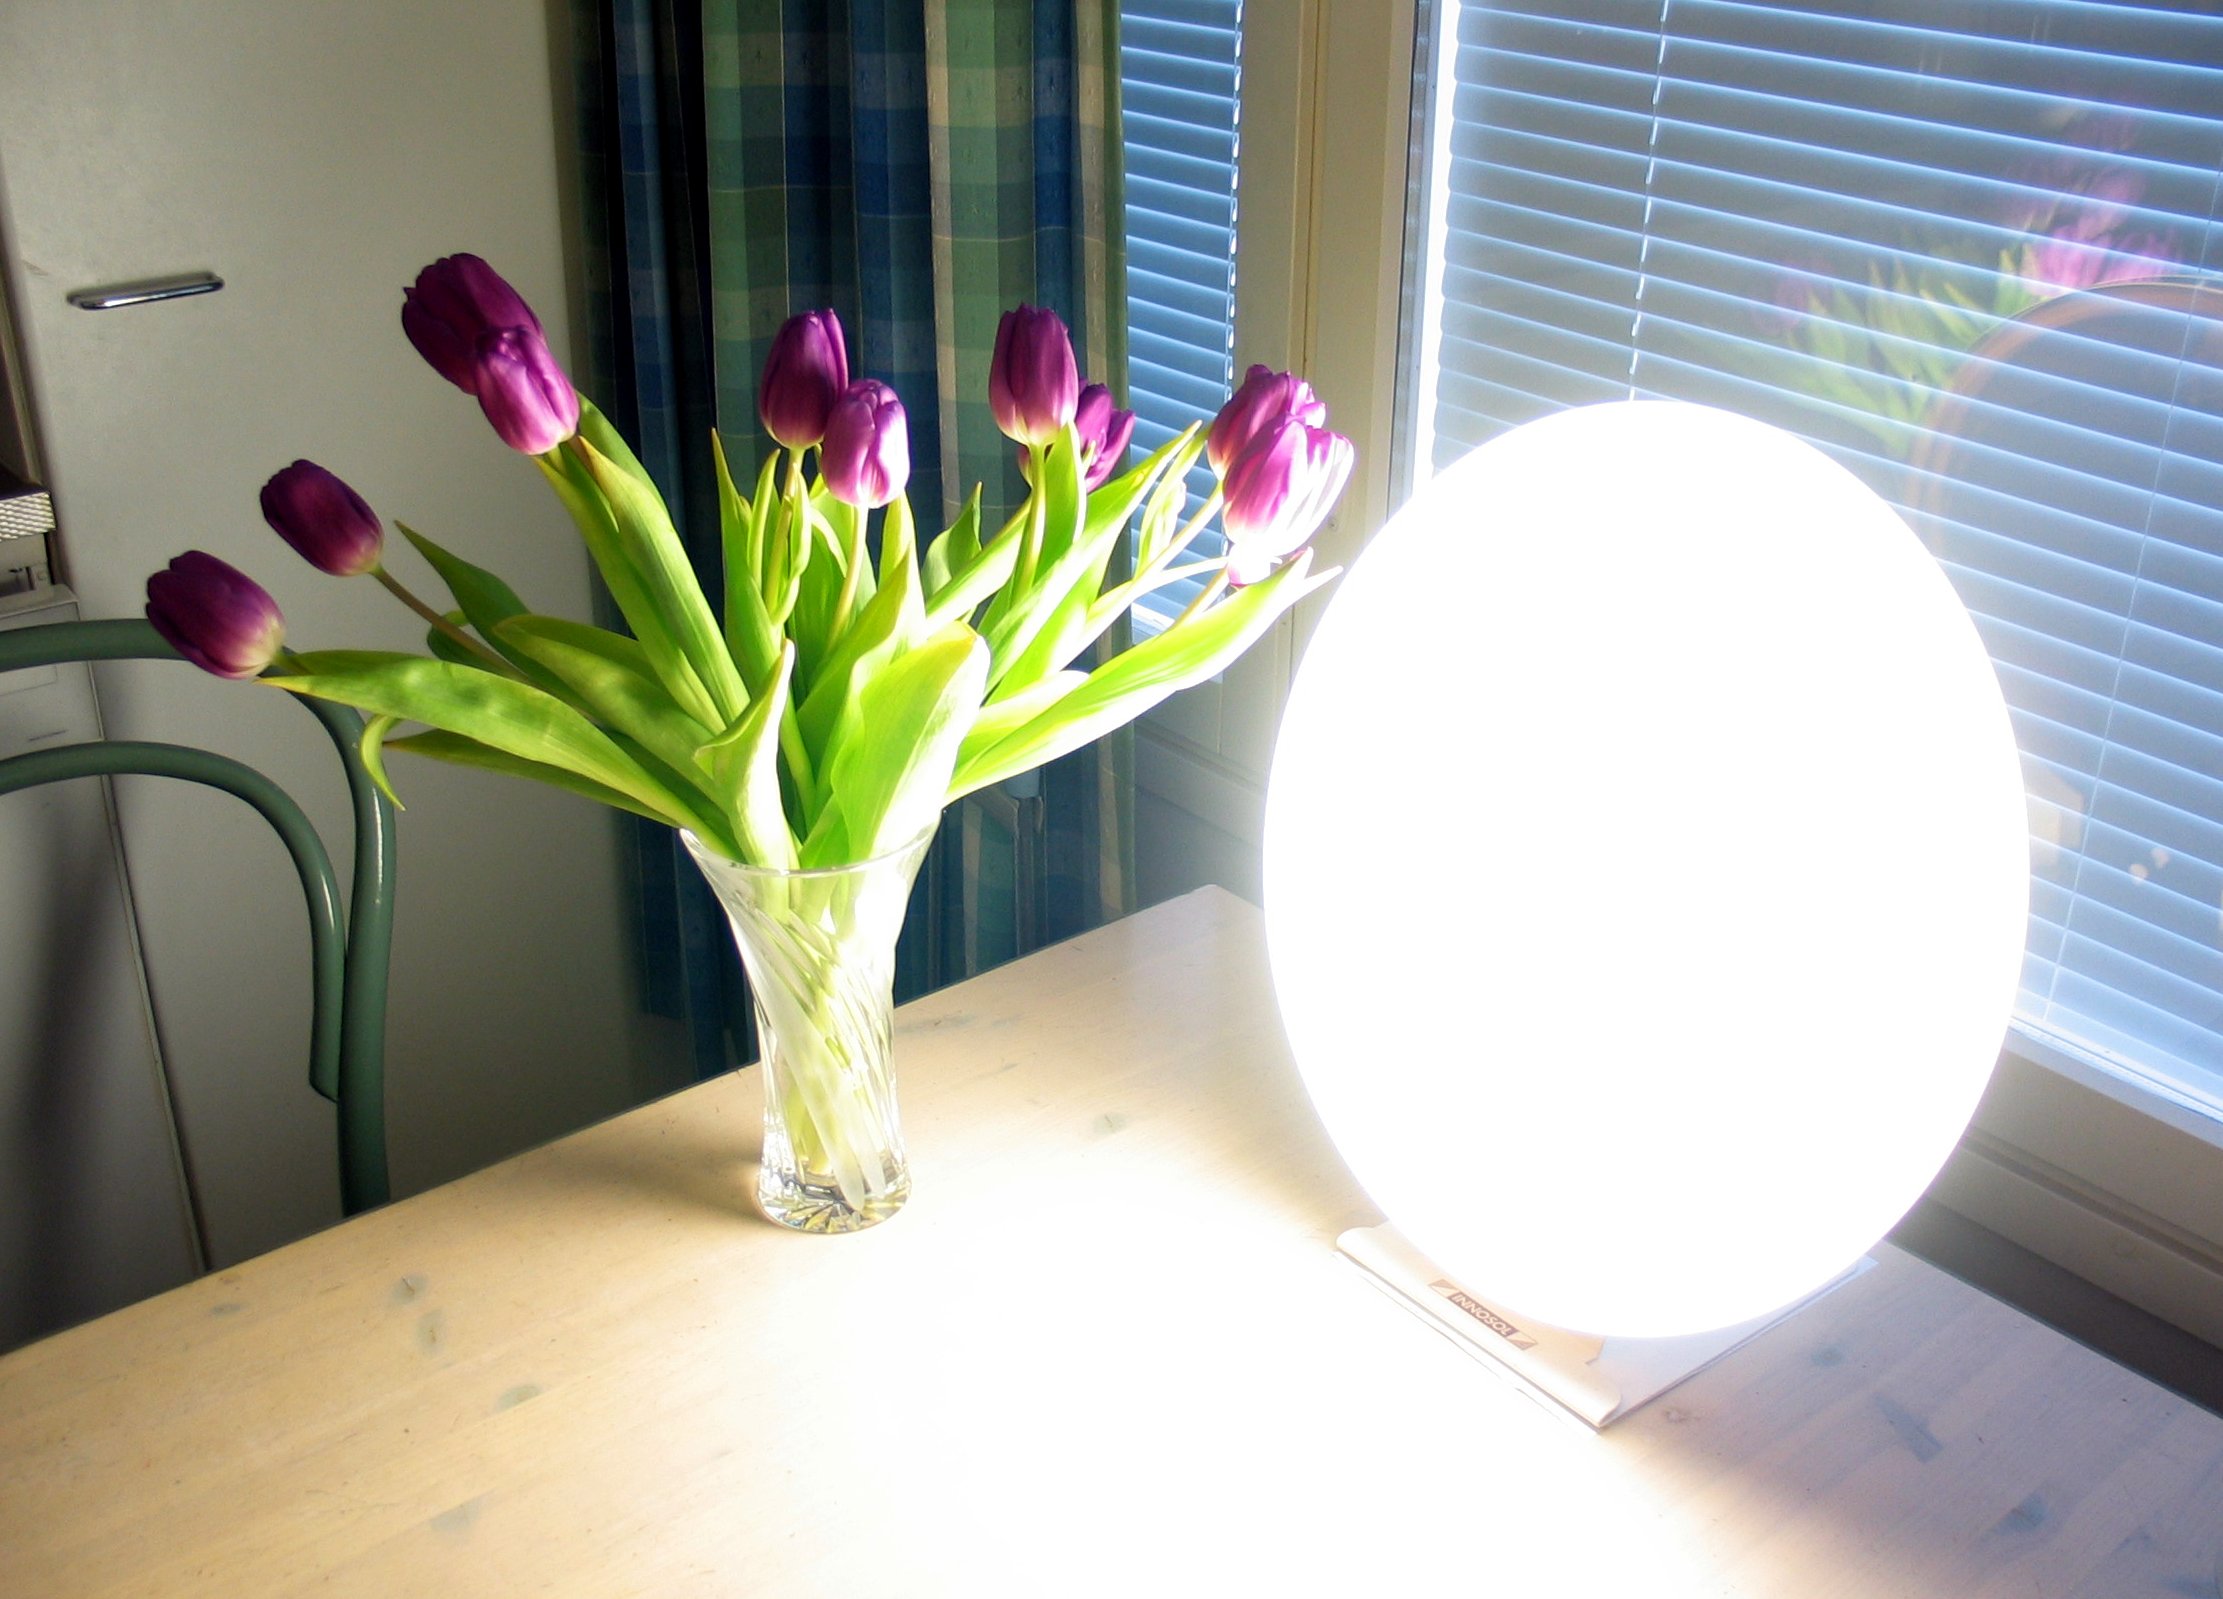 Tageslichtlampe strahlt einen Strauß pinker Tulpen an